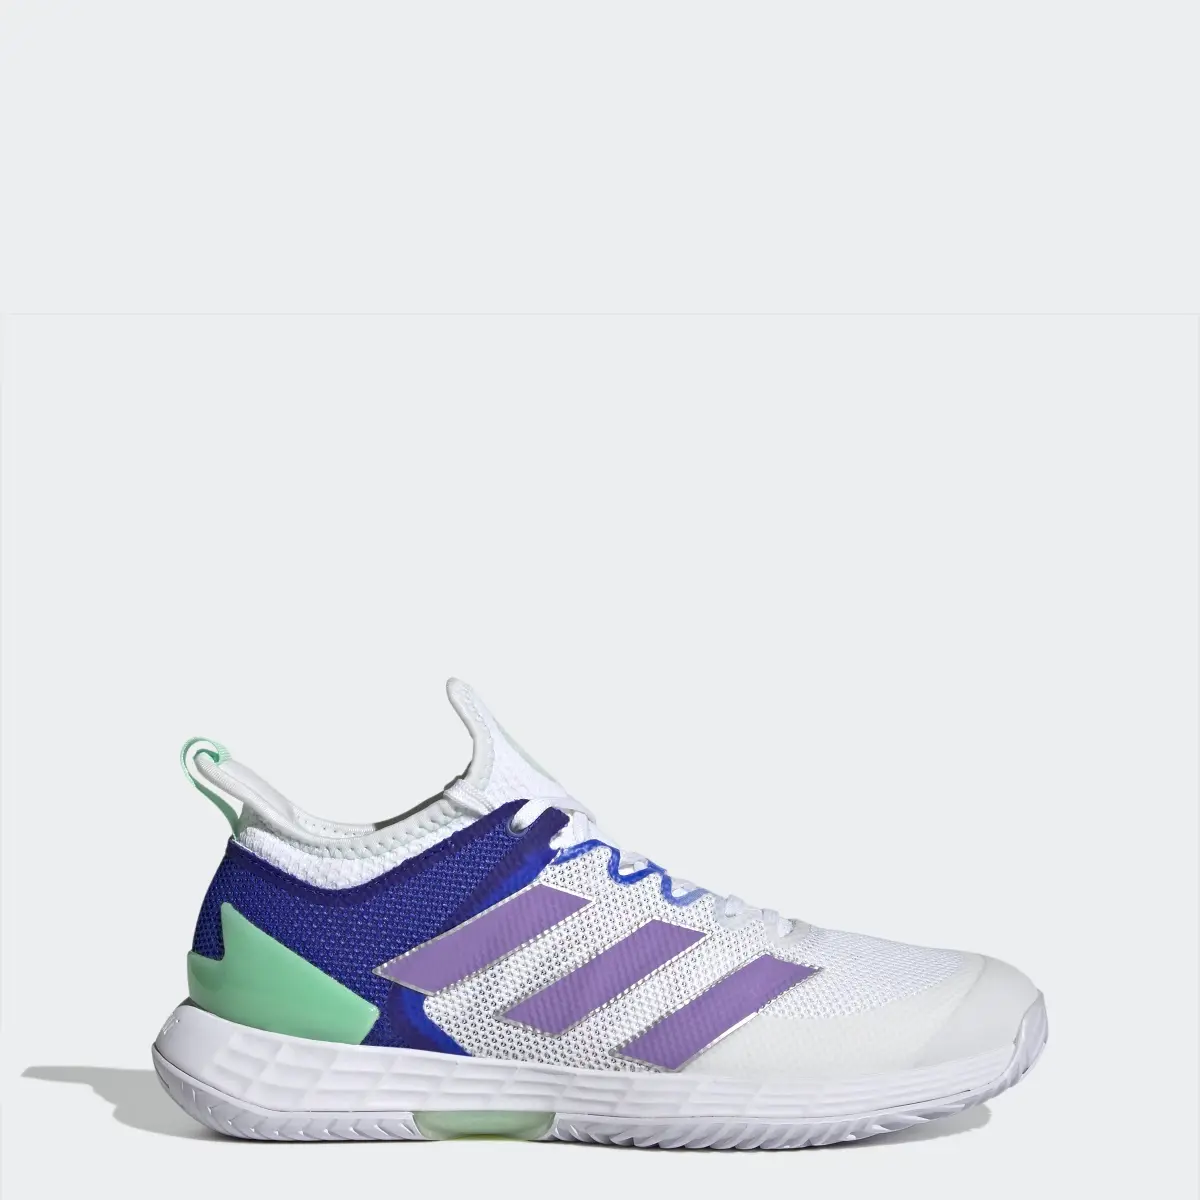 Adidas adizero Ubersonic 4 Tennis Shoes. 1